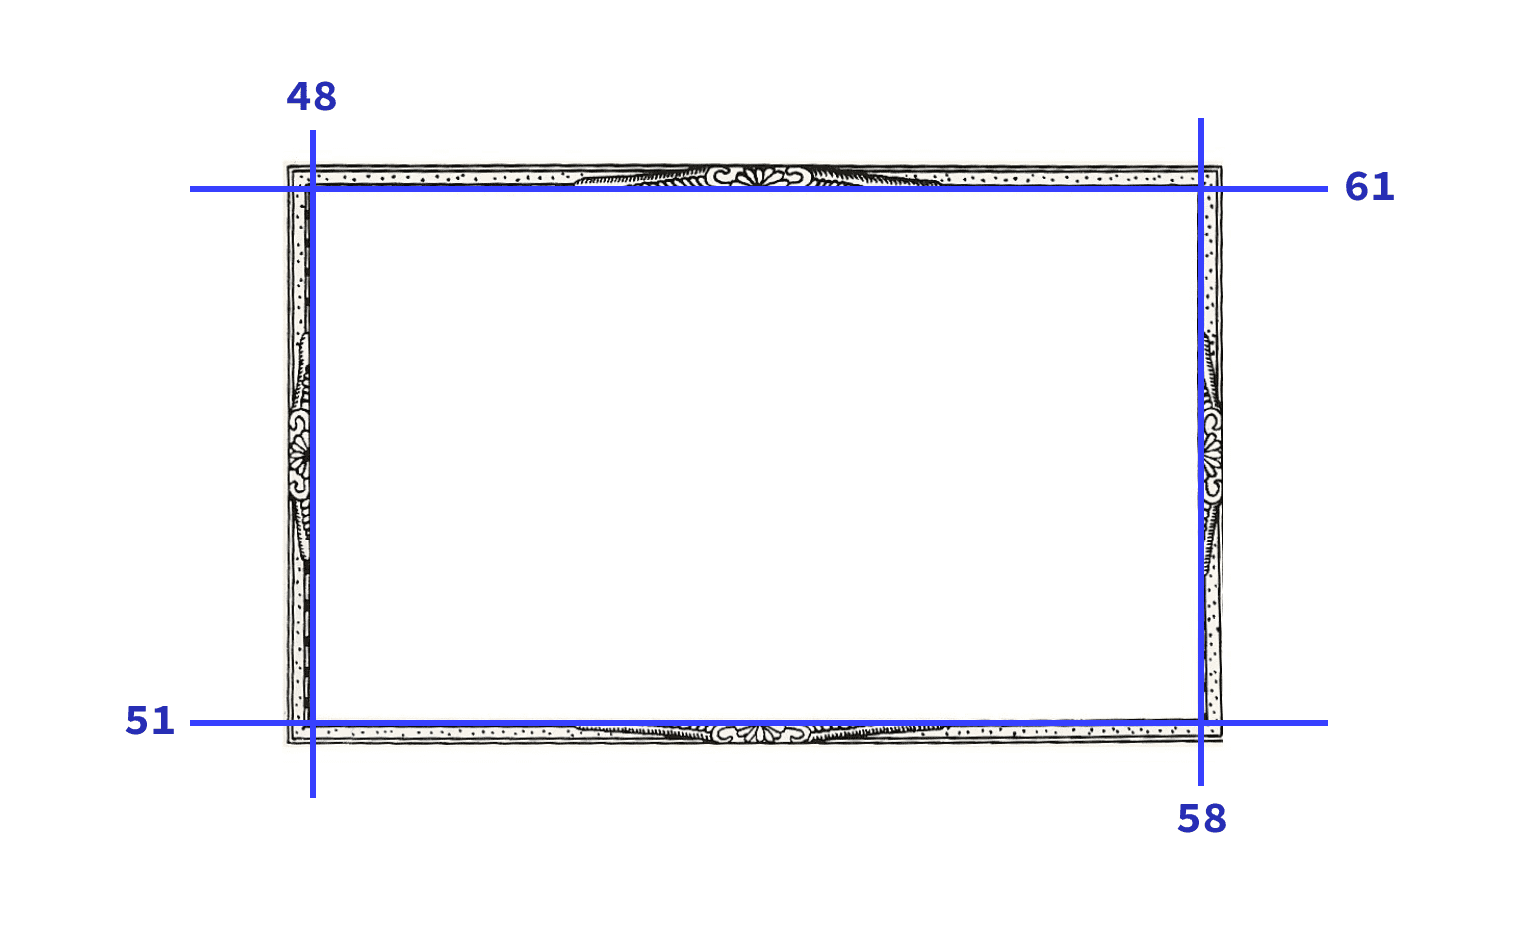 Hình ảnh được dùng trong bản minh hoạ với 4 lát cắt được thể hiện bằng các đường màu xanh dương